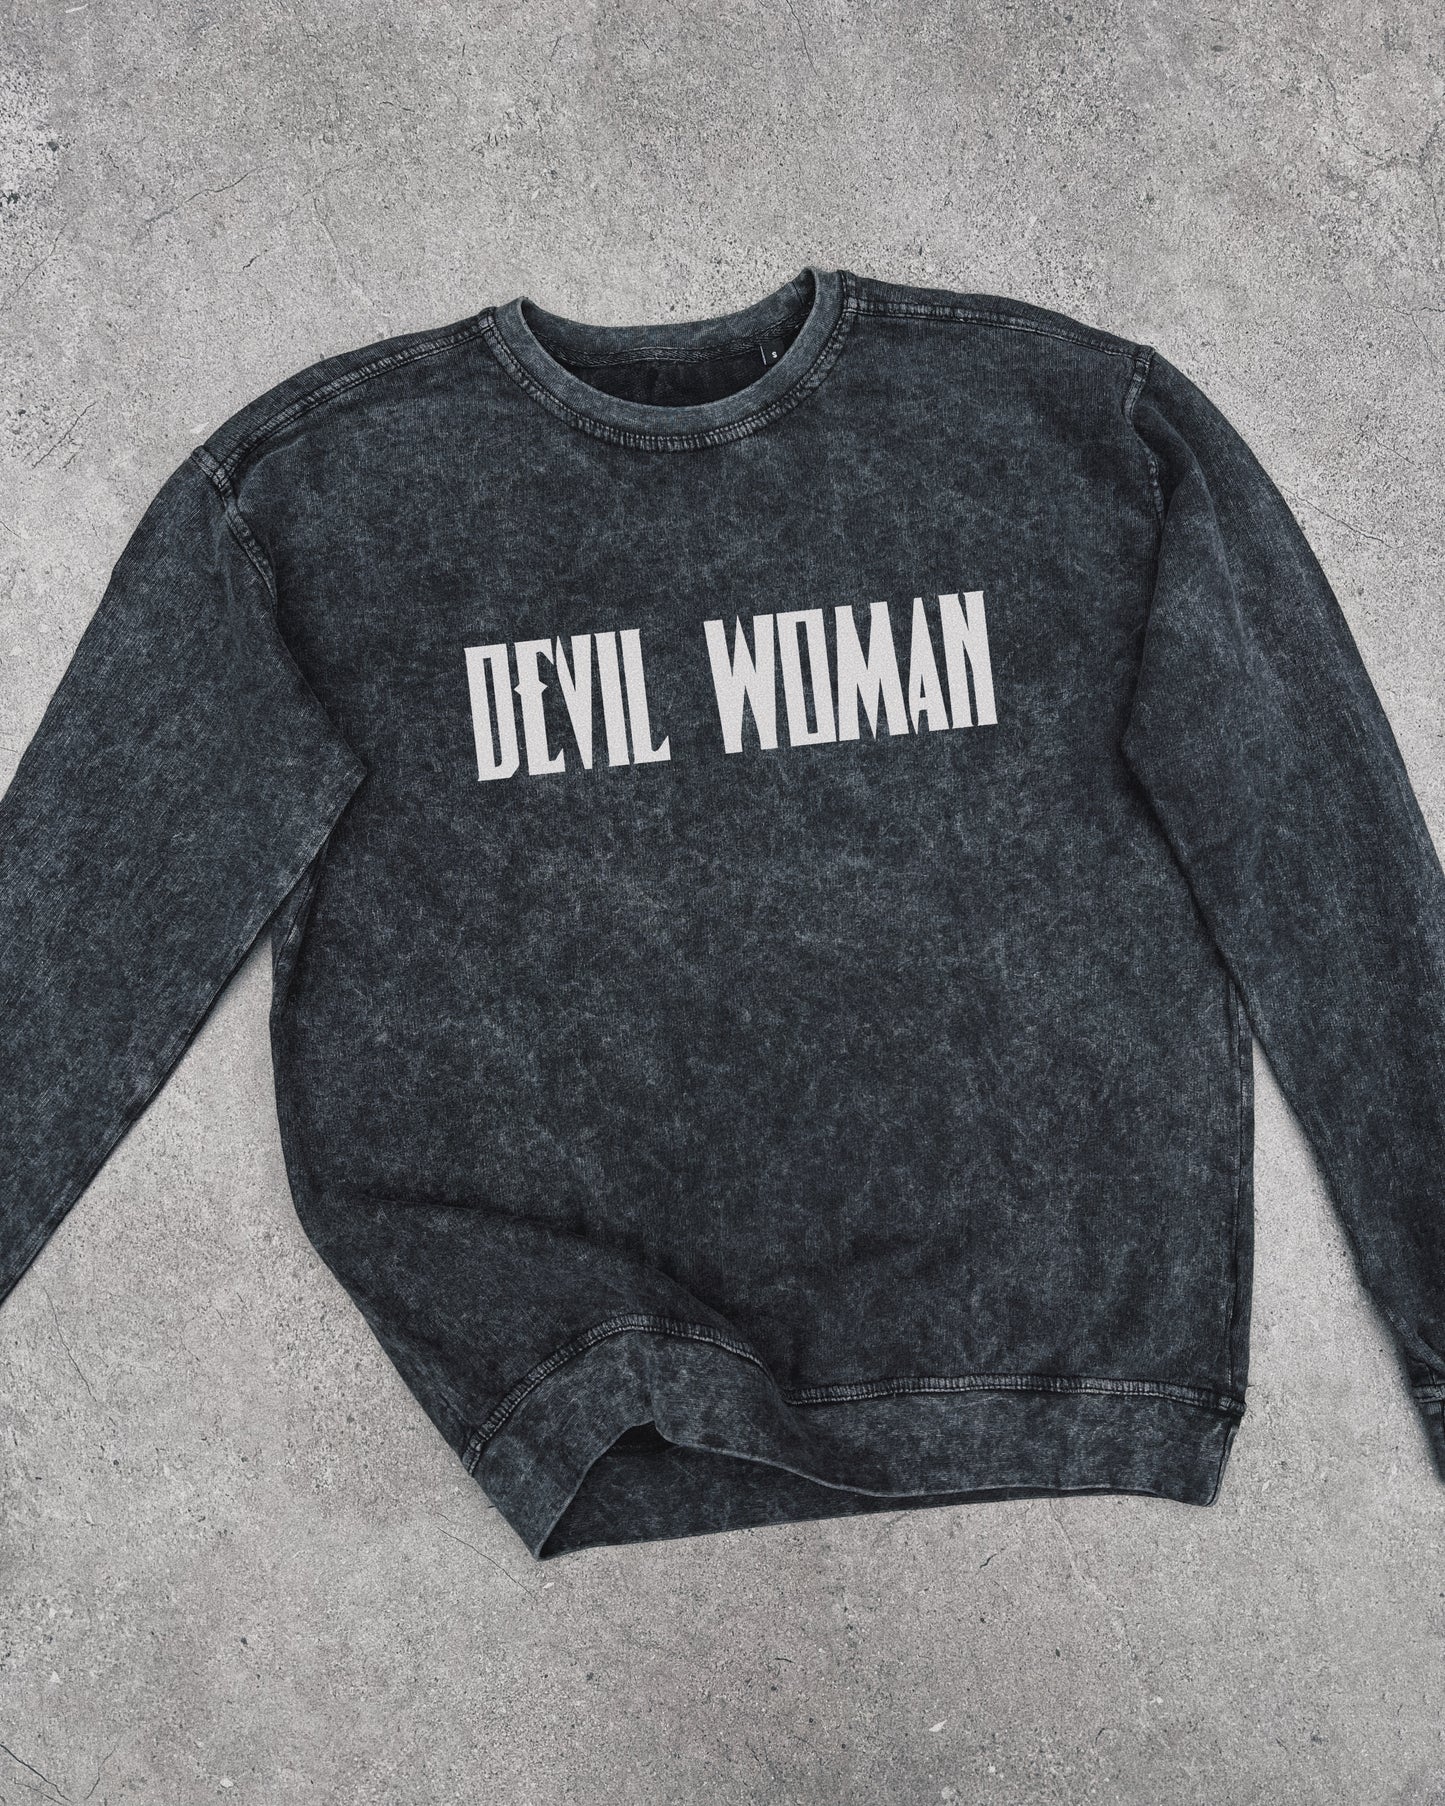 Devil Woman - Sweatshirt